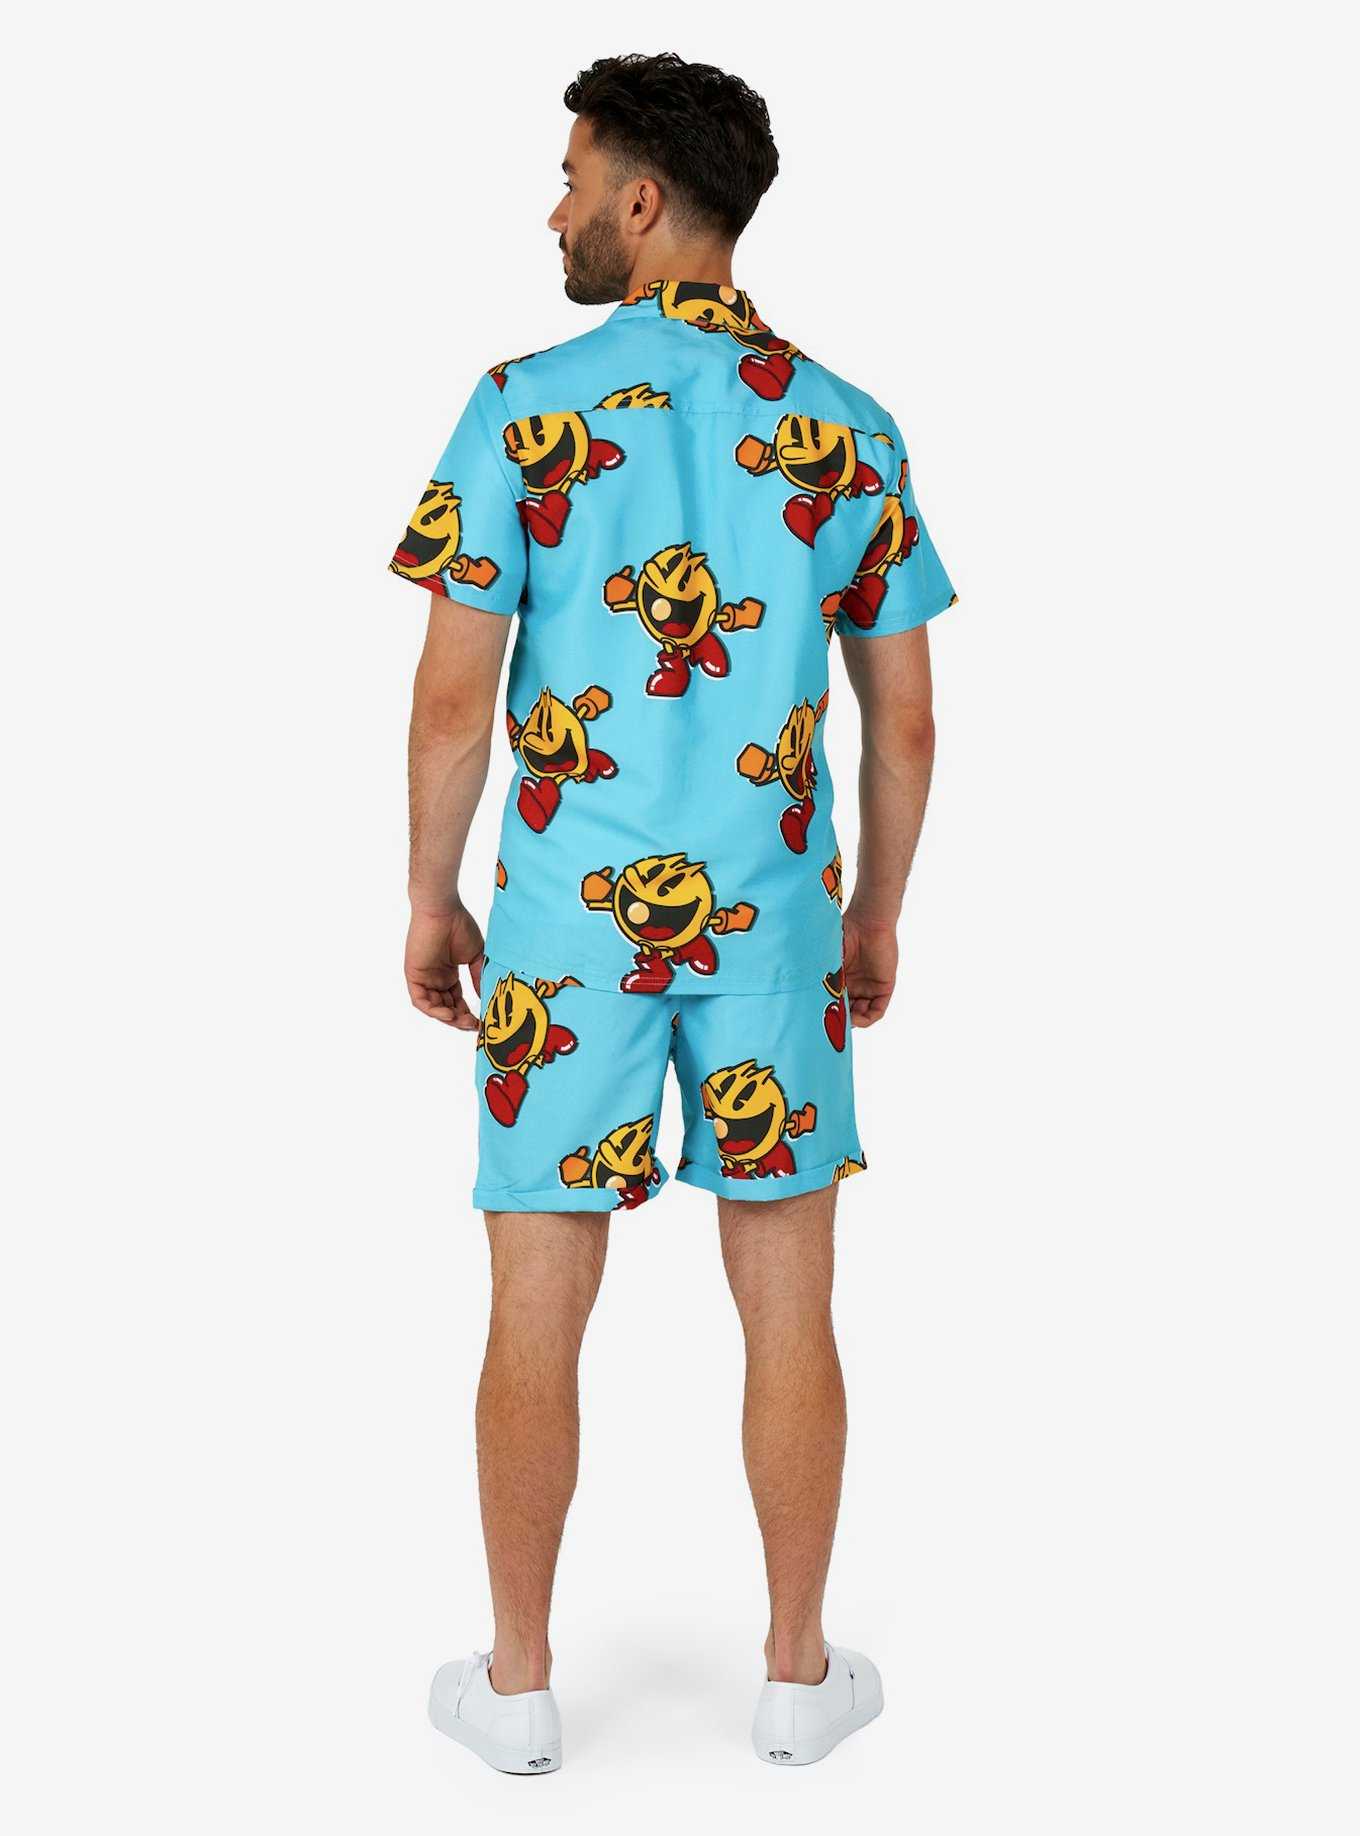 Pac-Man Waka-Waka Summer Shorts Set, , hi-res